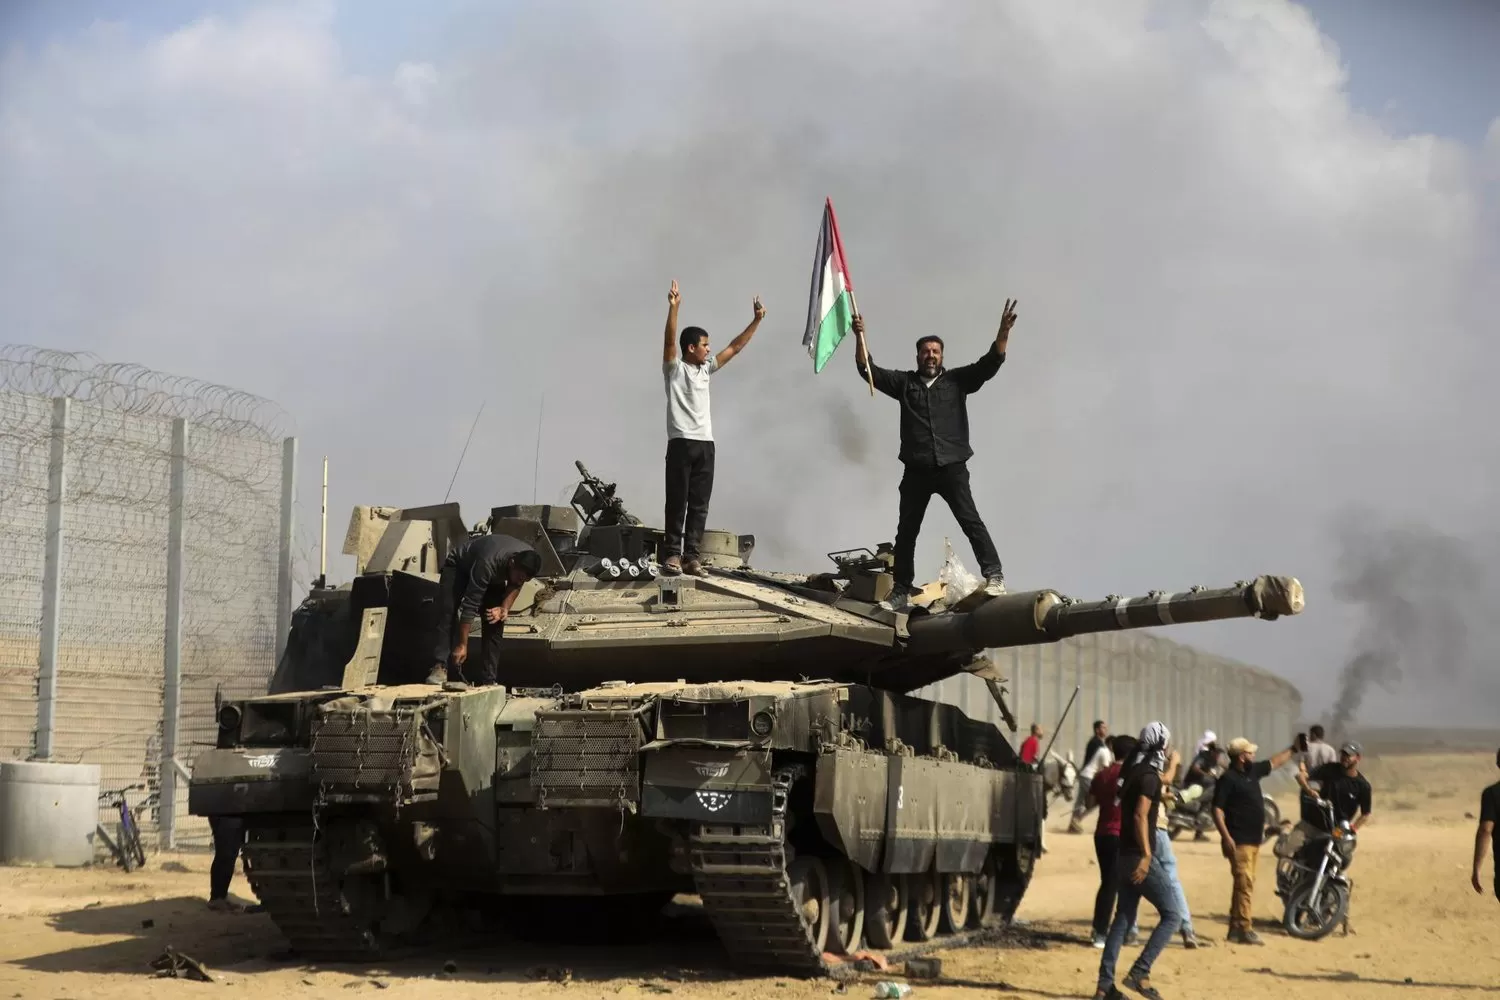 فلسطينيون يحتفلون فوق وحول دبابة إسرائيلية مدمرة قرب سياج قطاع غزة شرق خان يونس